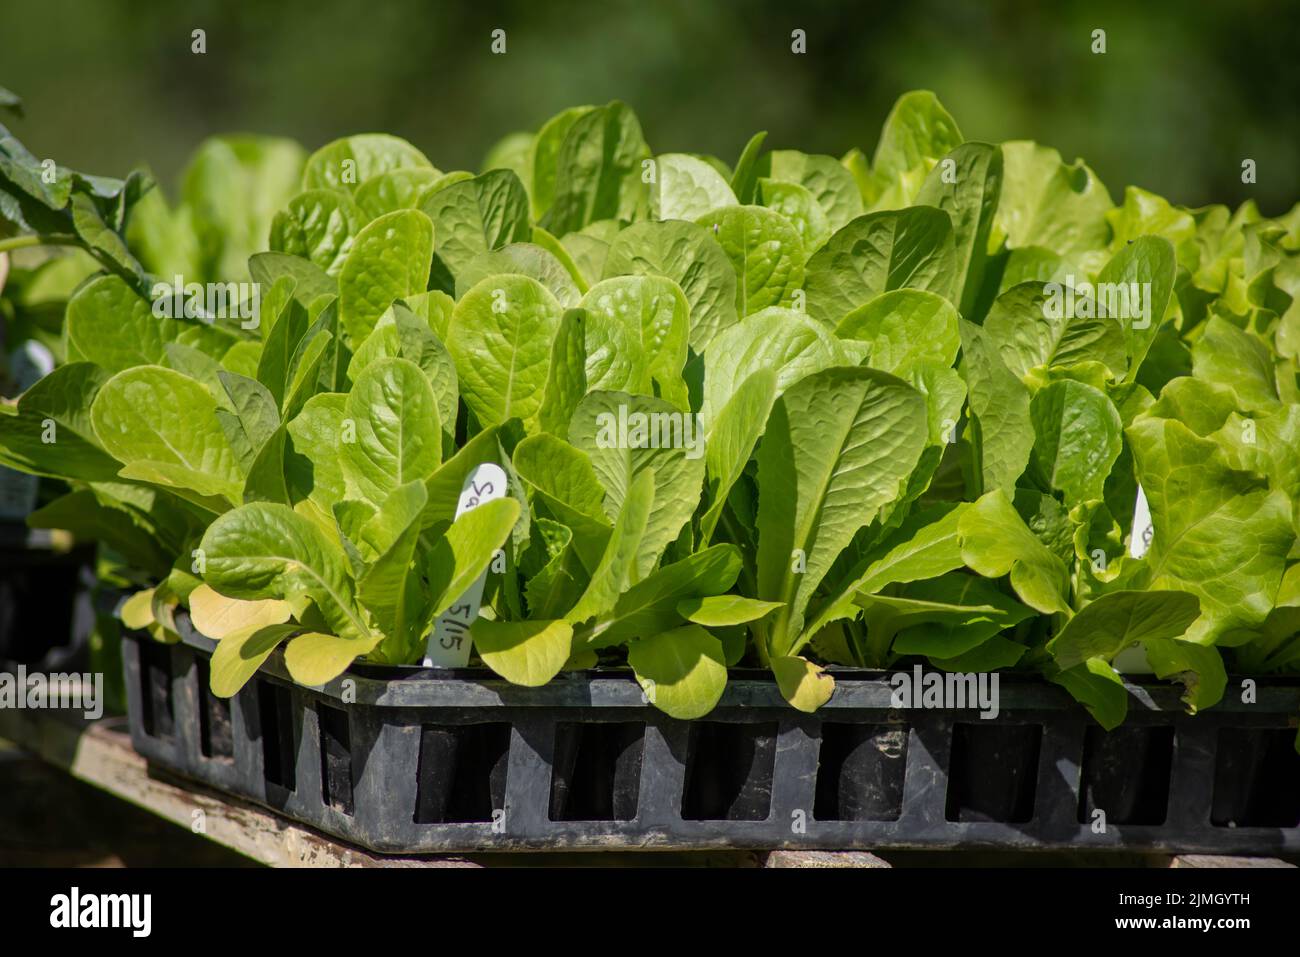 Plantones de lechuga de hoja verde en bandejas de jardín al aire libre en granja orgánica Foto de stock